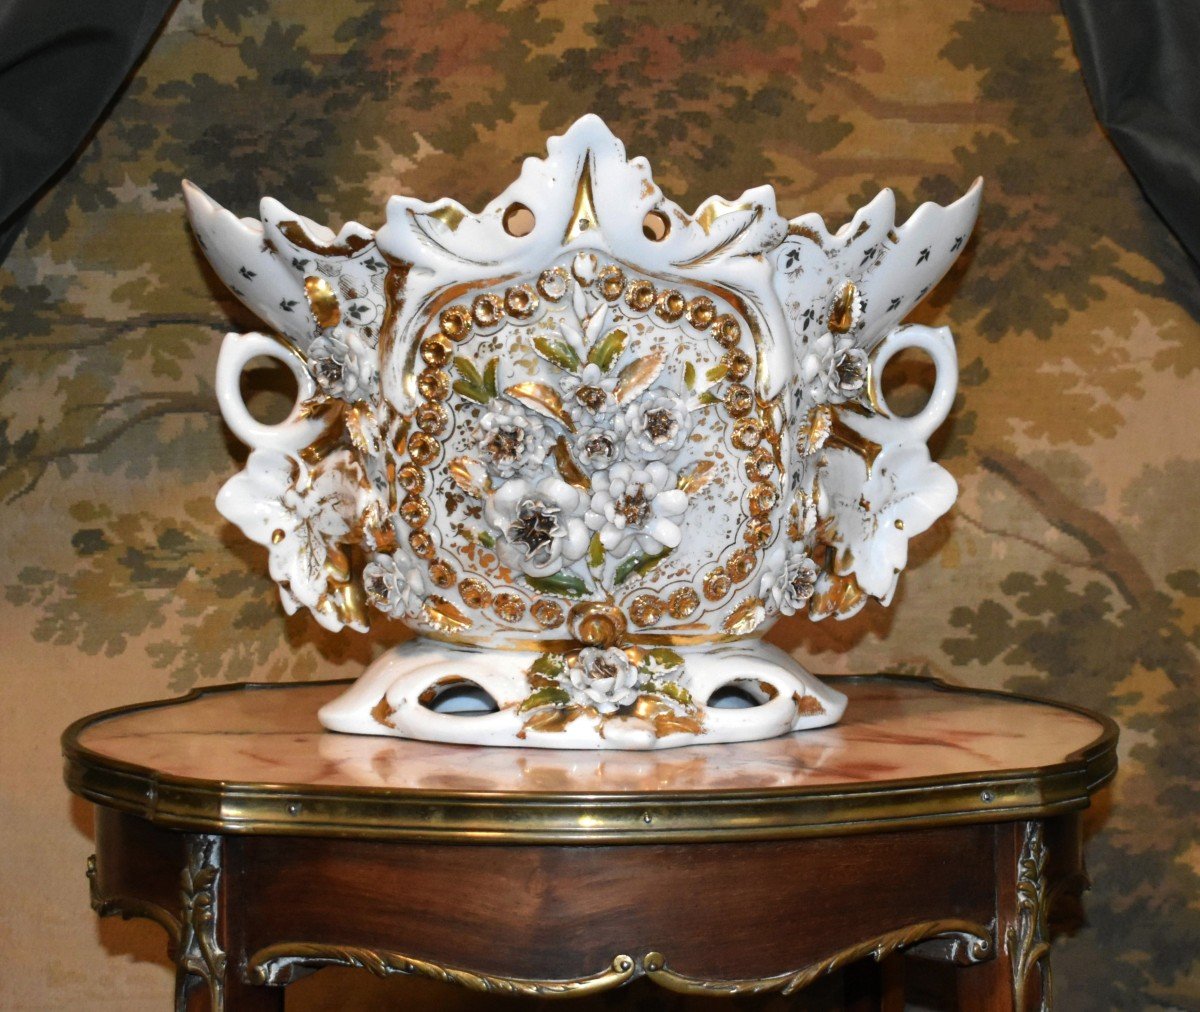 Grande Coupe, Important Vase En Porcelaine De Limoges, Jardinière Napoléon III à Décor En Relief. XIXe.